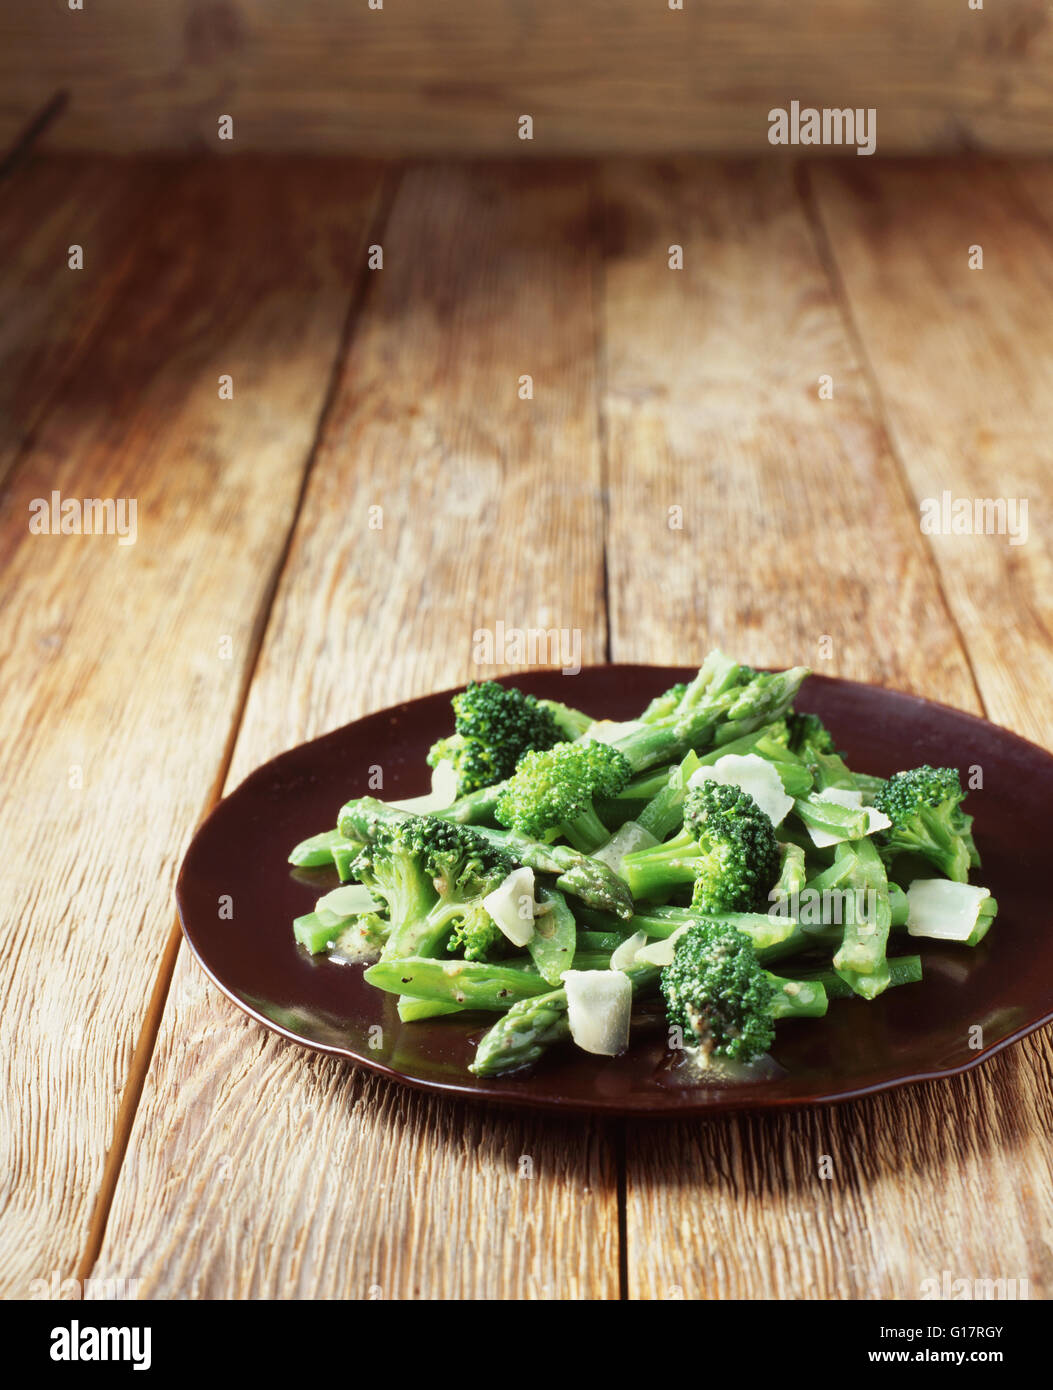 Le brocoli, les asperges et les haricots verts avec des copeaux de parmesan sur la plaque Banque D'Images